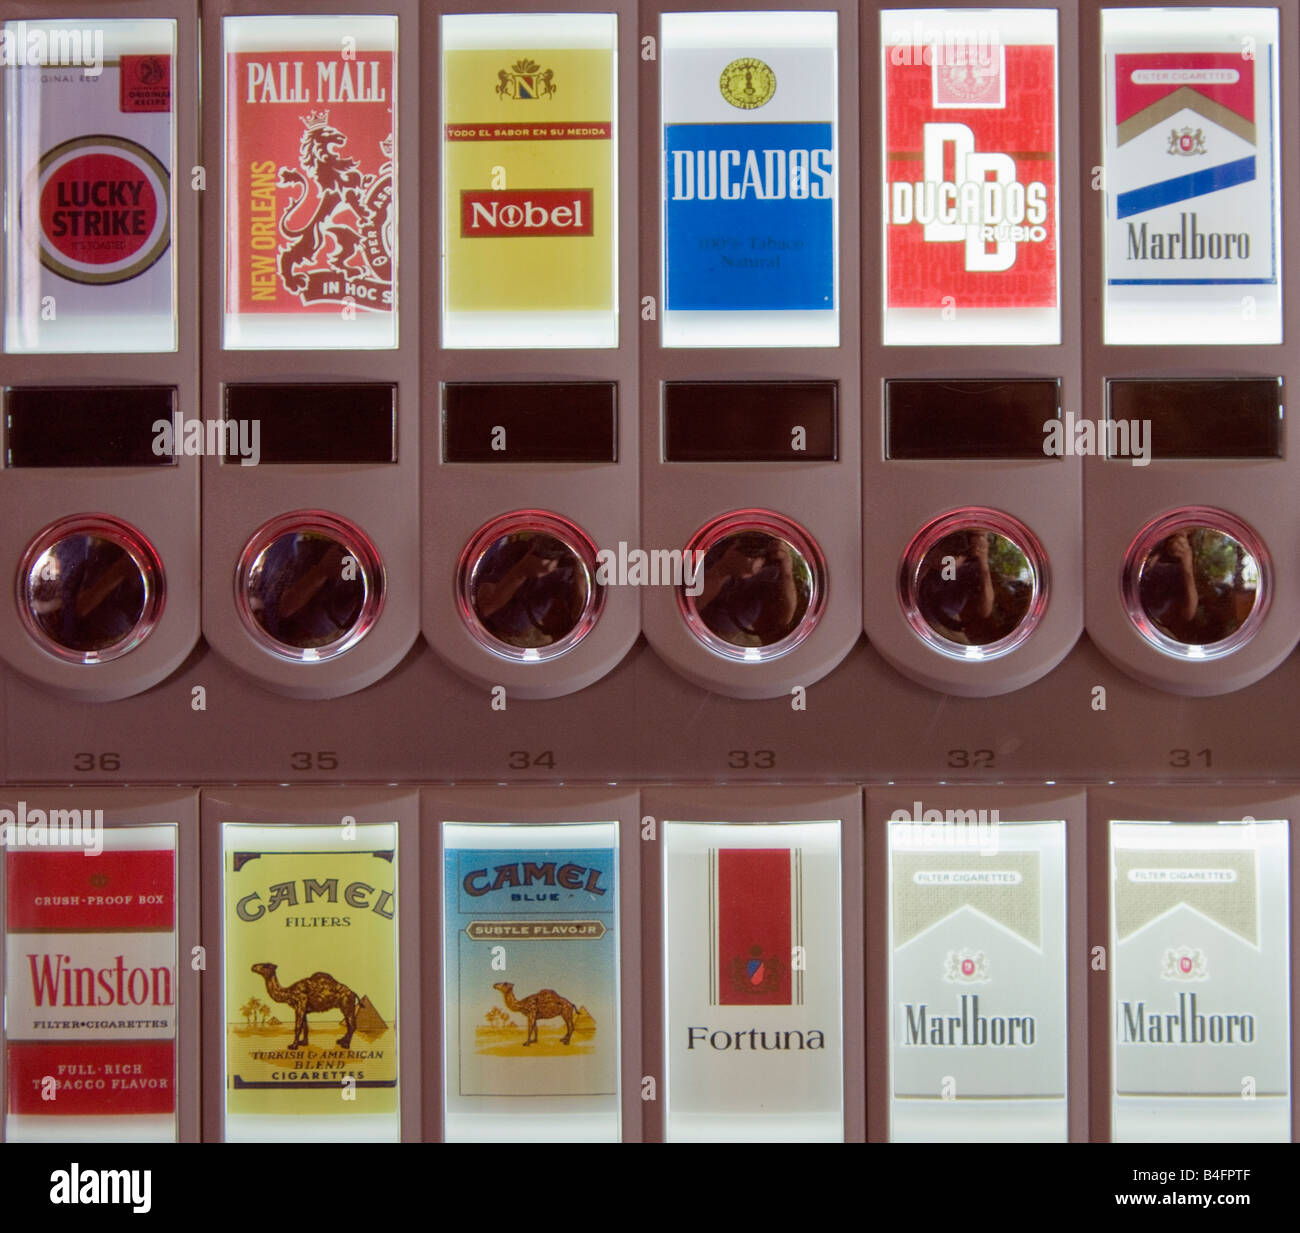 cigarette brands for women